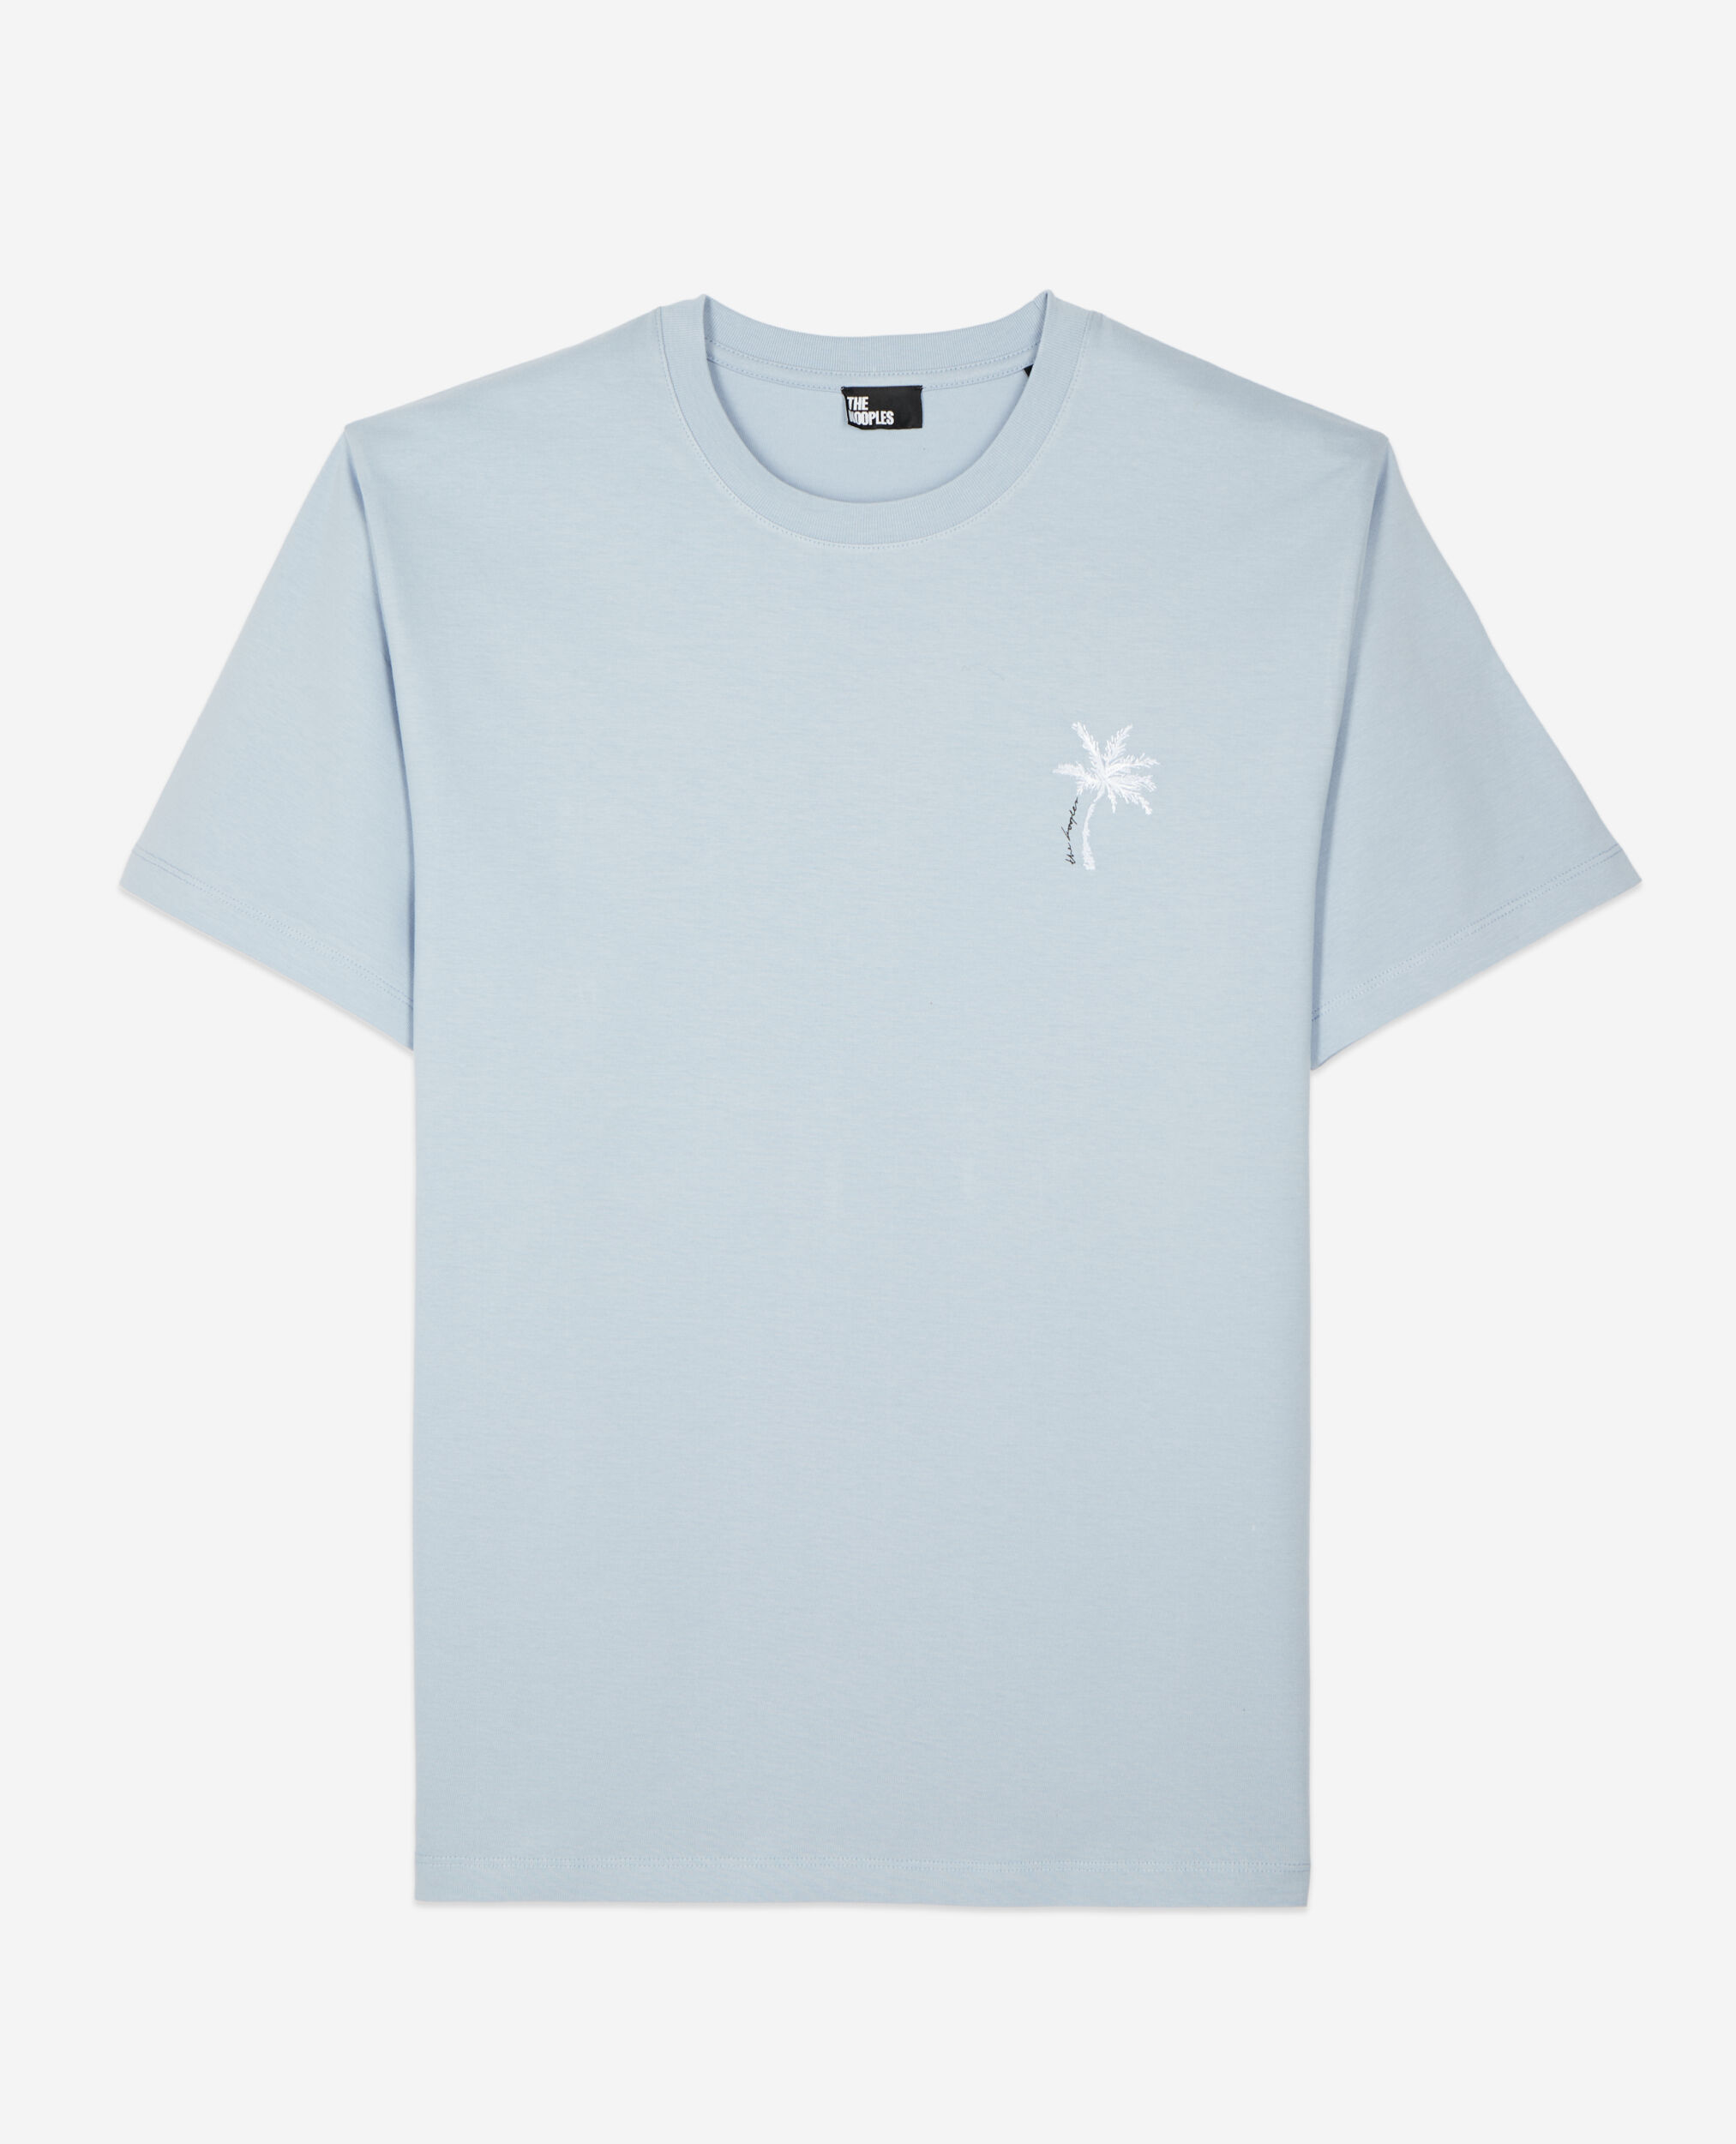 T-shirt bleu ciel avec broderie Palm tree, LAVENDER, hi-res image number null